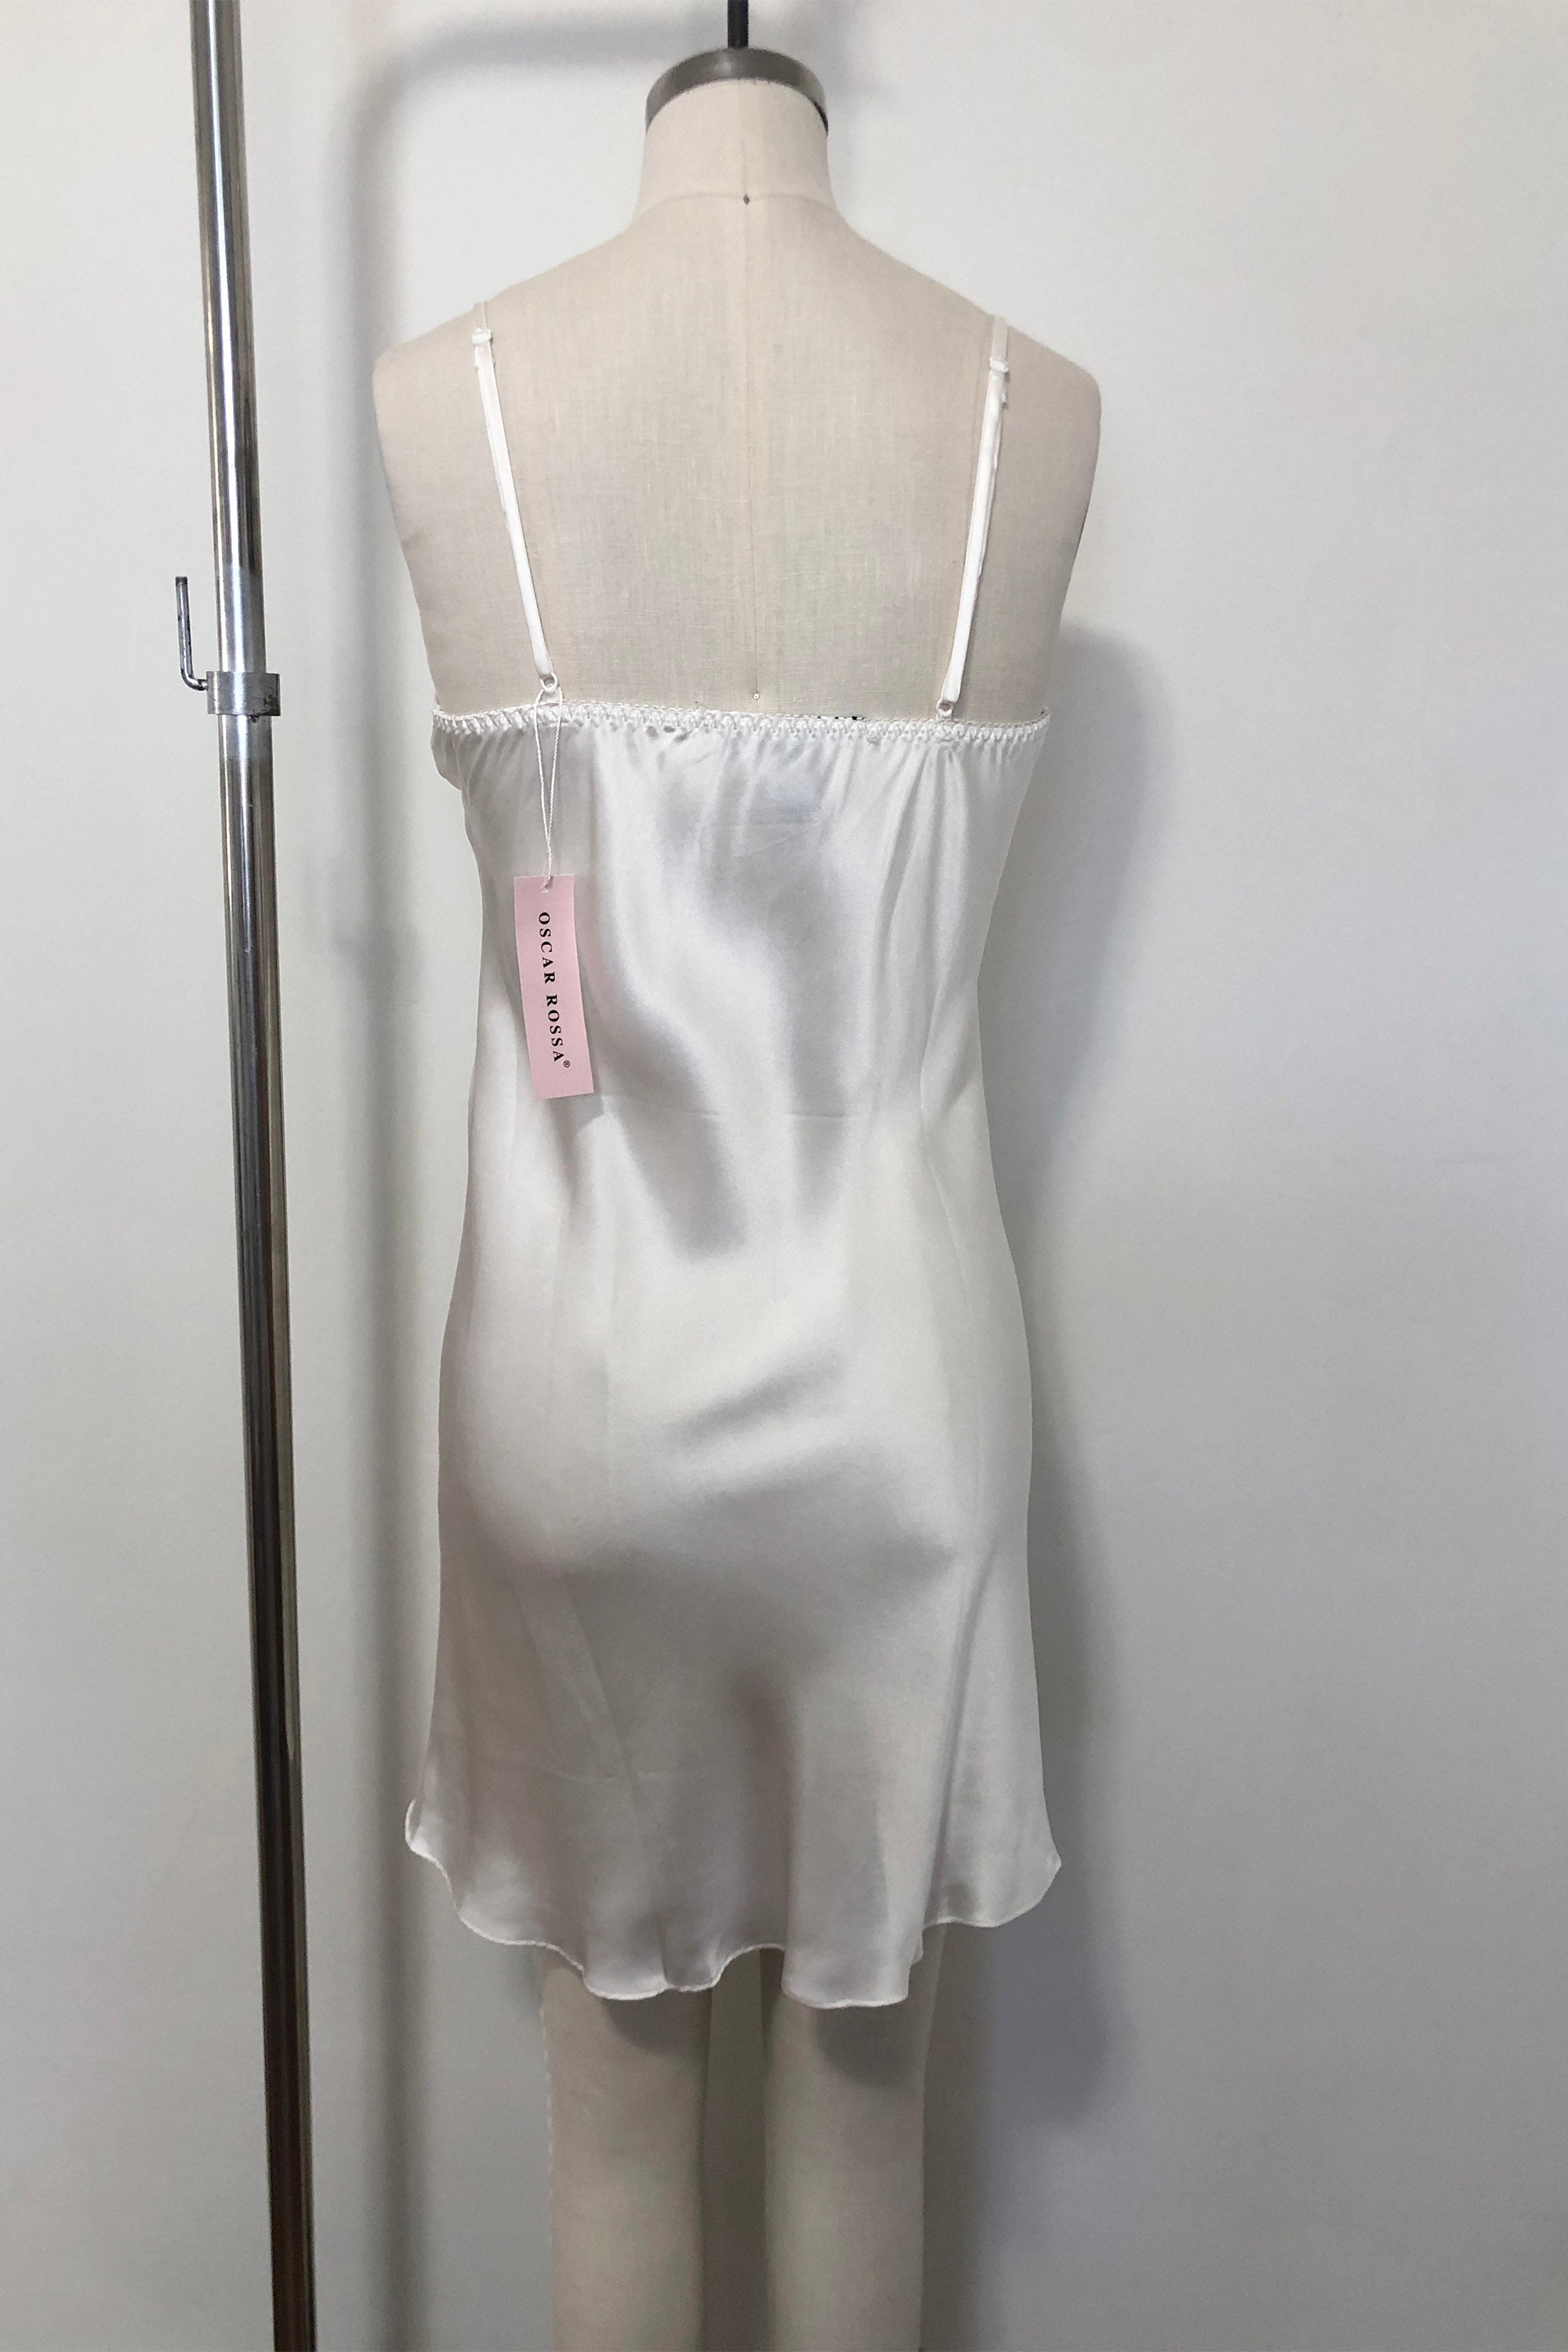 Women's Silk Sleepwear 100% Silk Chemise, White, S